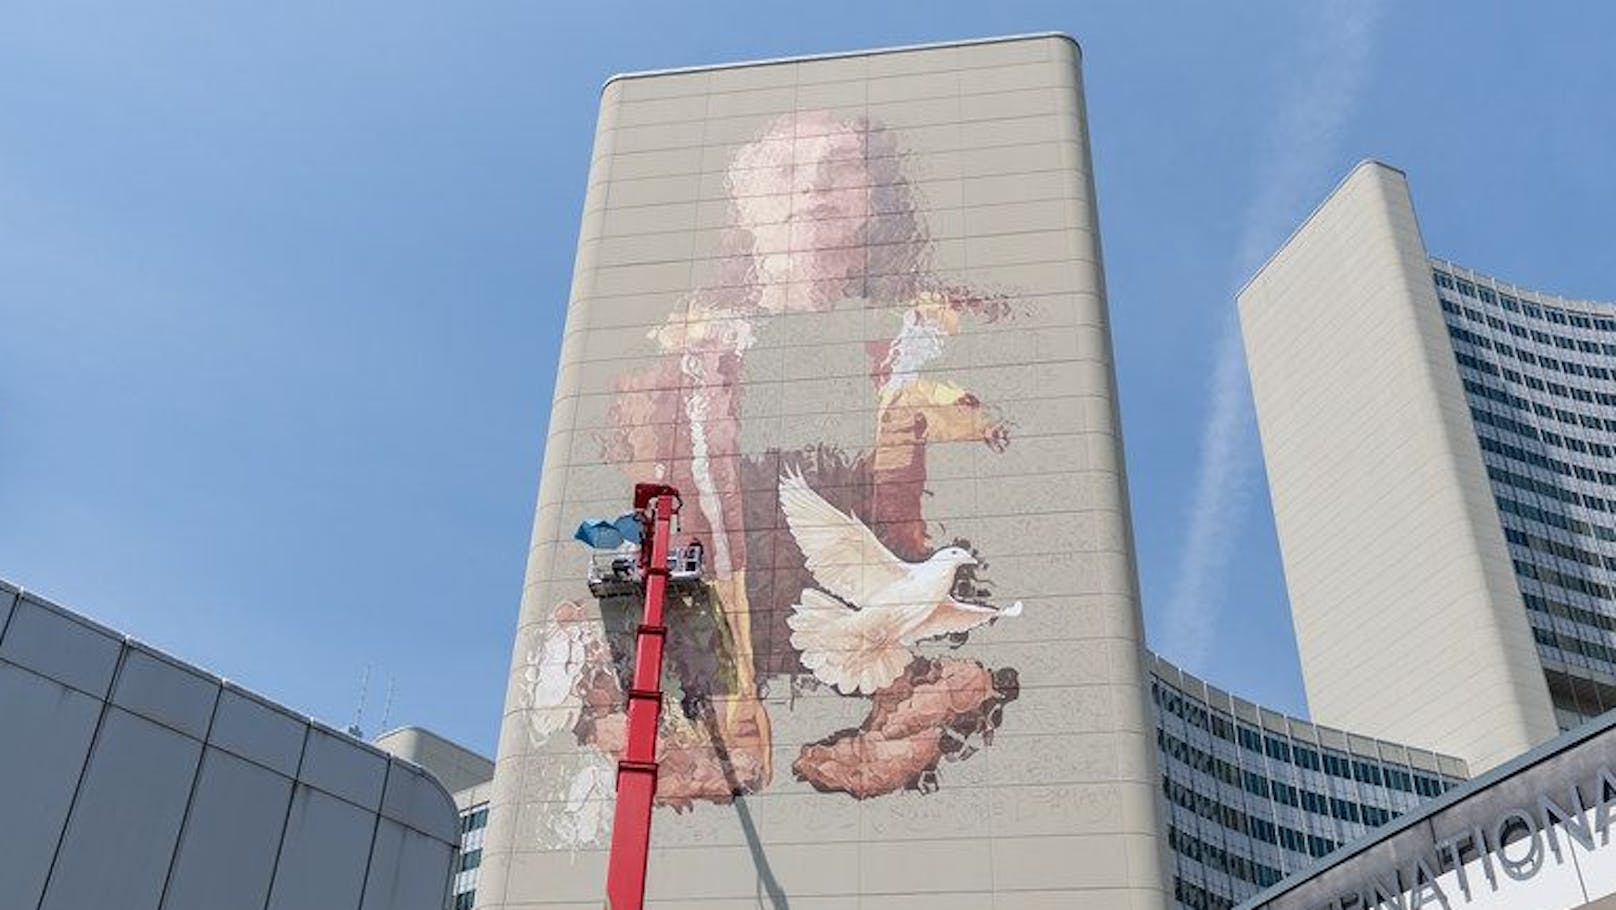 In luftiger Höhe – Künstler bemalt größte Wand Wiens